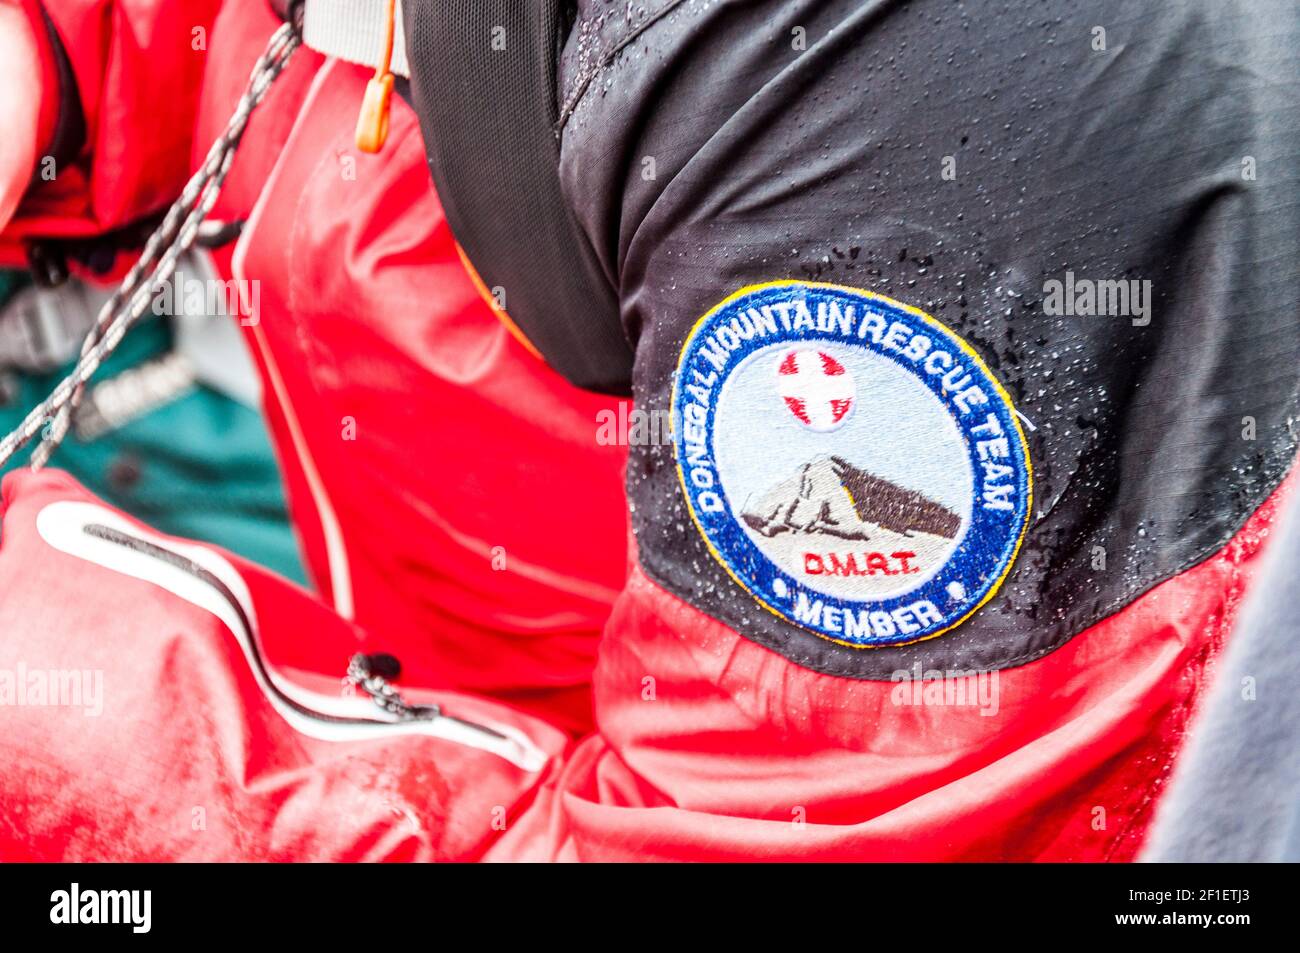 Donegal Mountain Rescue Team Mitglied einer Mission. Logopatch auf wasserdichtem Hi-vis Jackentasche. Stockfoto